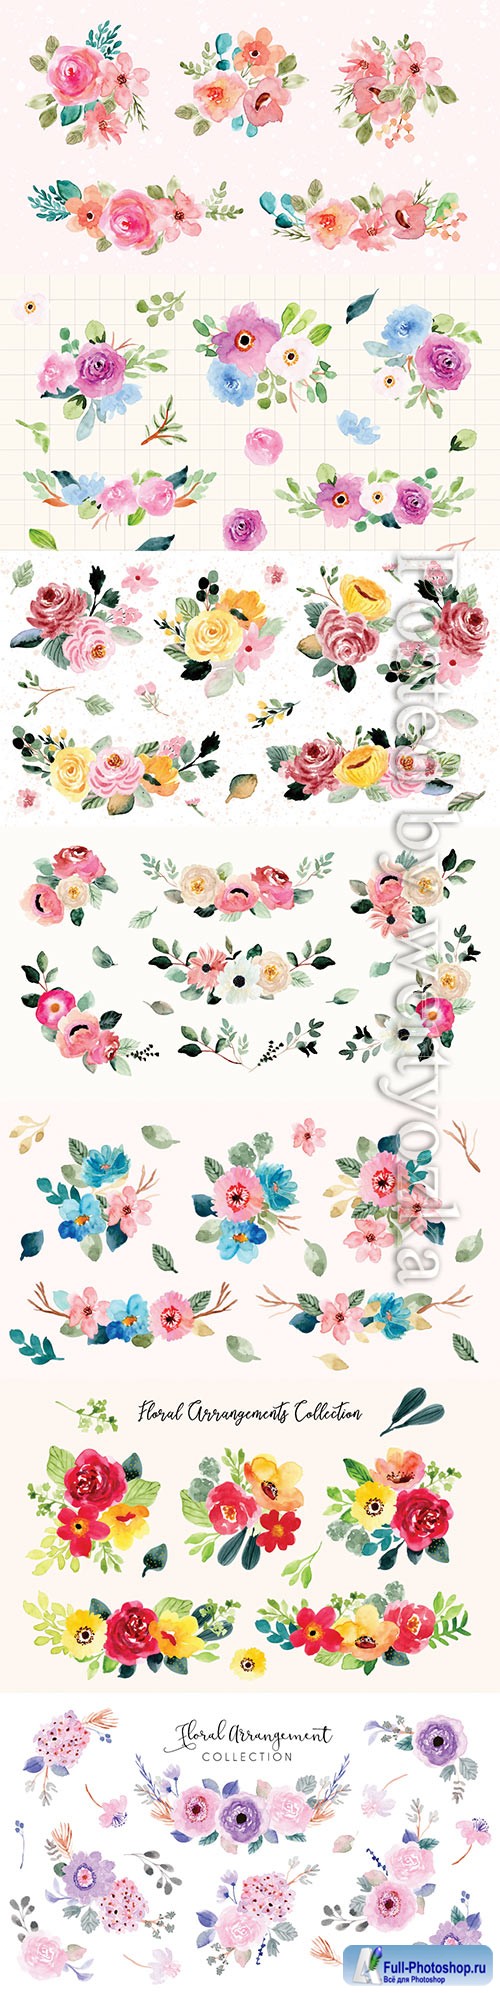 Pretty flower arrangement watercolor collection